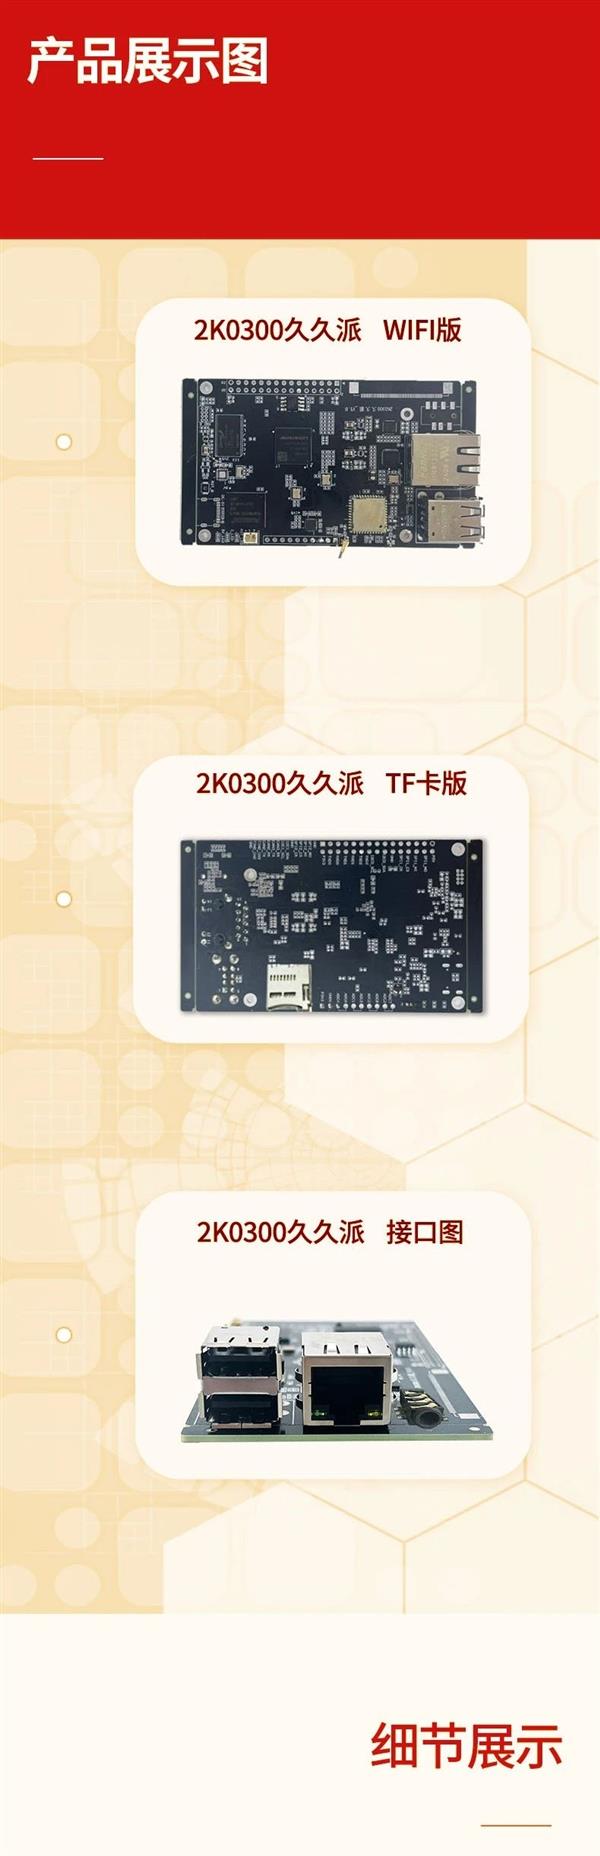 龙芯2K0300触控一体机发布：自主架构单核1GHz 功耗不到1W